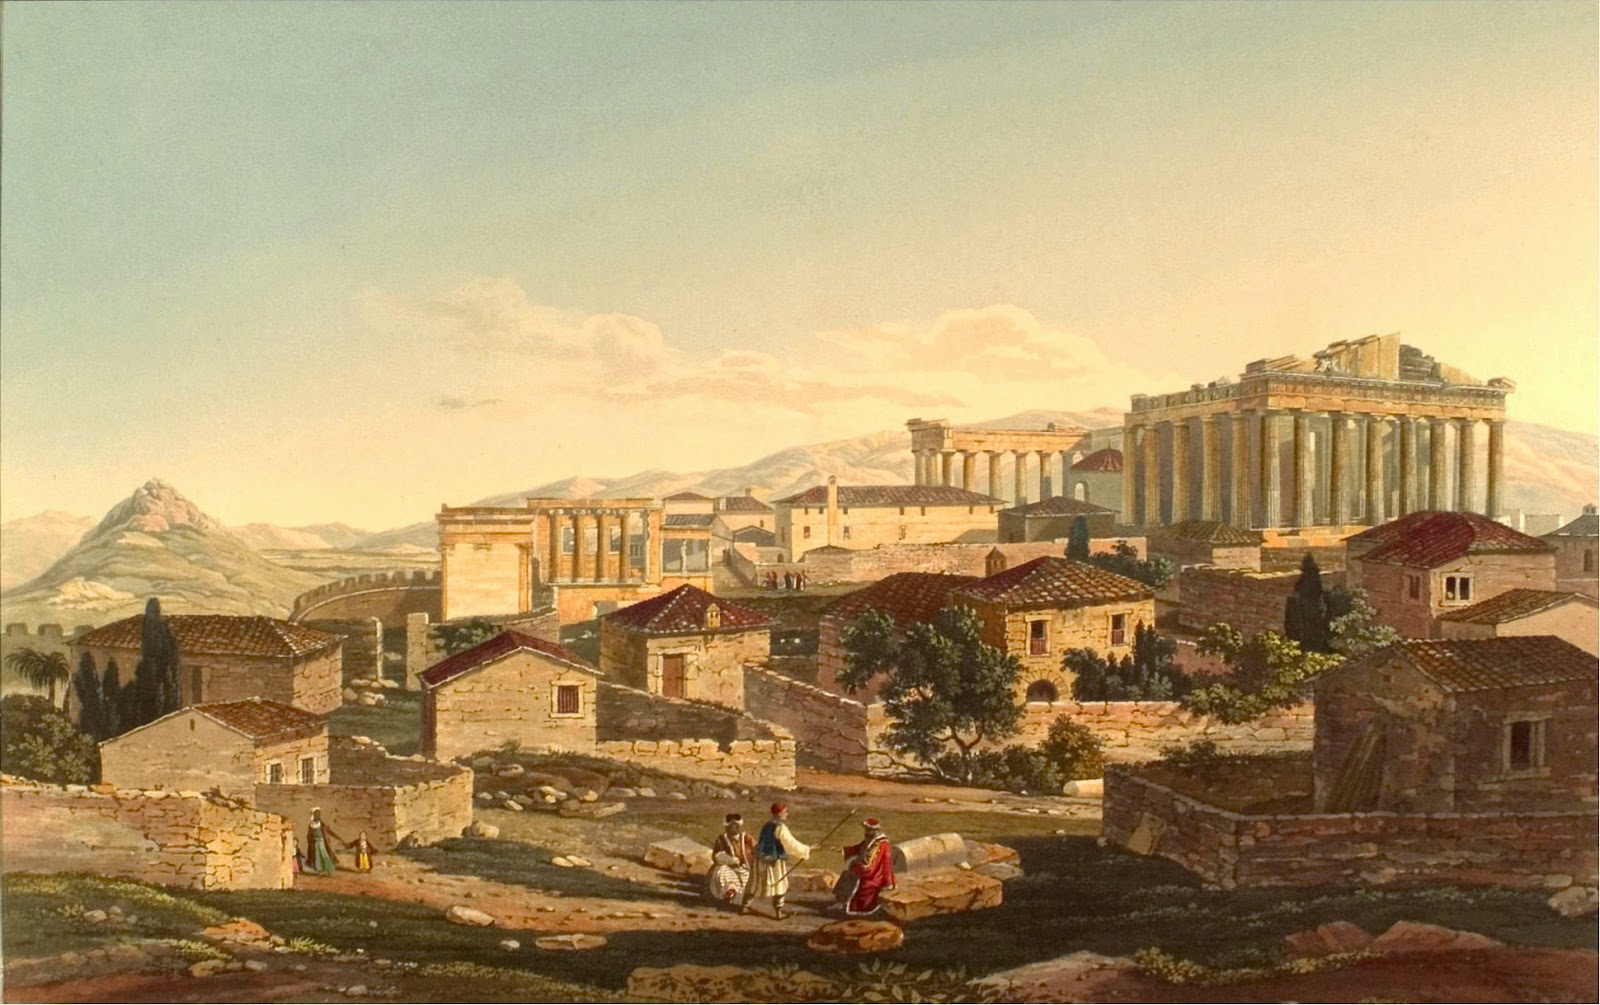 ΑΘΗΝΑ: Η Ακρόπολη το 1802 στην Τουρκοκρατία. Πίνακας του Ε.Dodwell. Ο πίνακας περιέχει ακριβείς λεπτομέρειες για το εσωτερικό της Ακρόπολης λίγο πριν από την επανάσταση του 1821. Στο βάθος φαίνεται ο Υμηττός, αριστερά ο Λυκαβηττός, που τότε λεγόταν Άγχεσμος και πίσω του το Πεντελικό όρος.